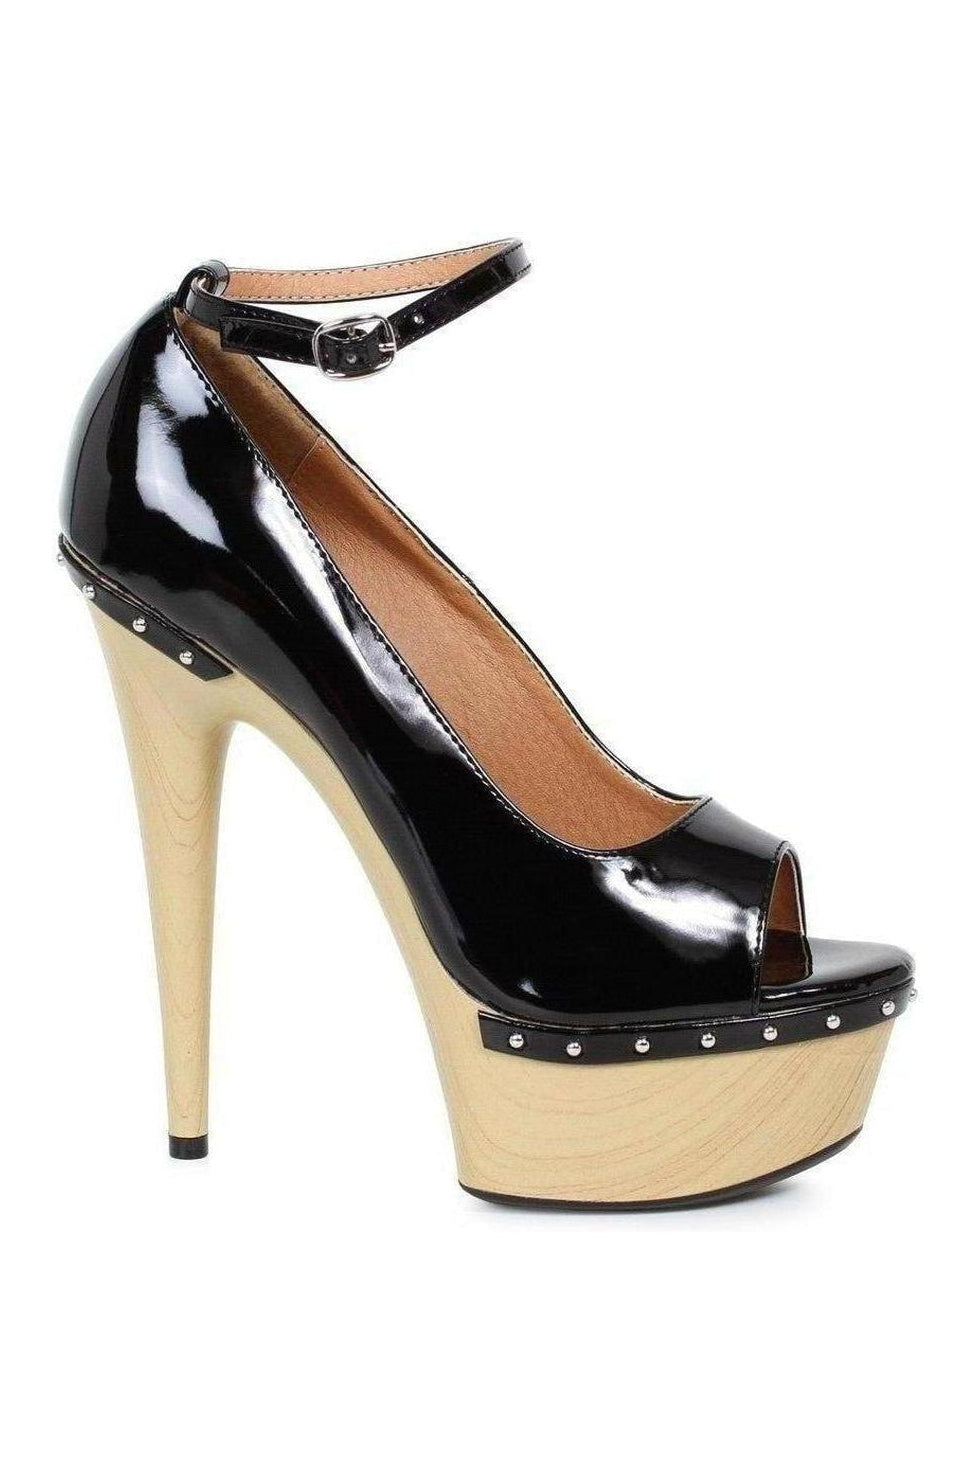 609-VALERIE Platform Sandal | Black Patent-Ellie Shoes-SEXYSHOES.COM